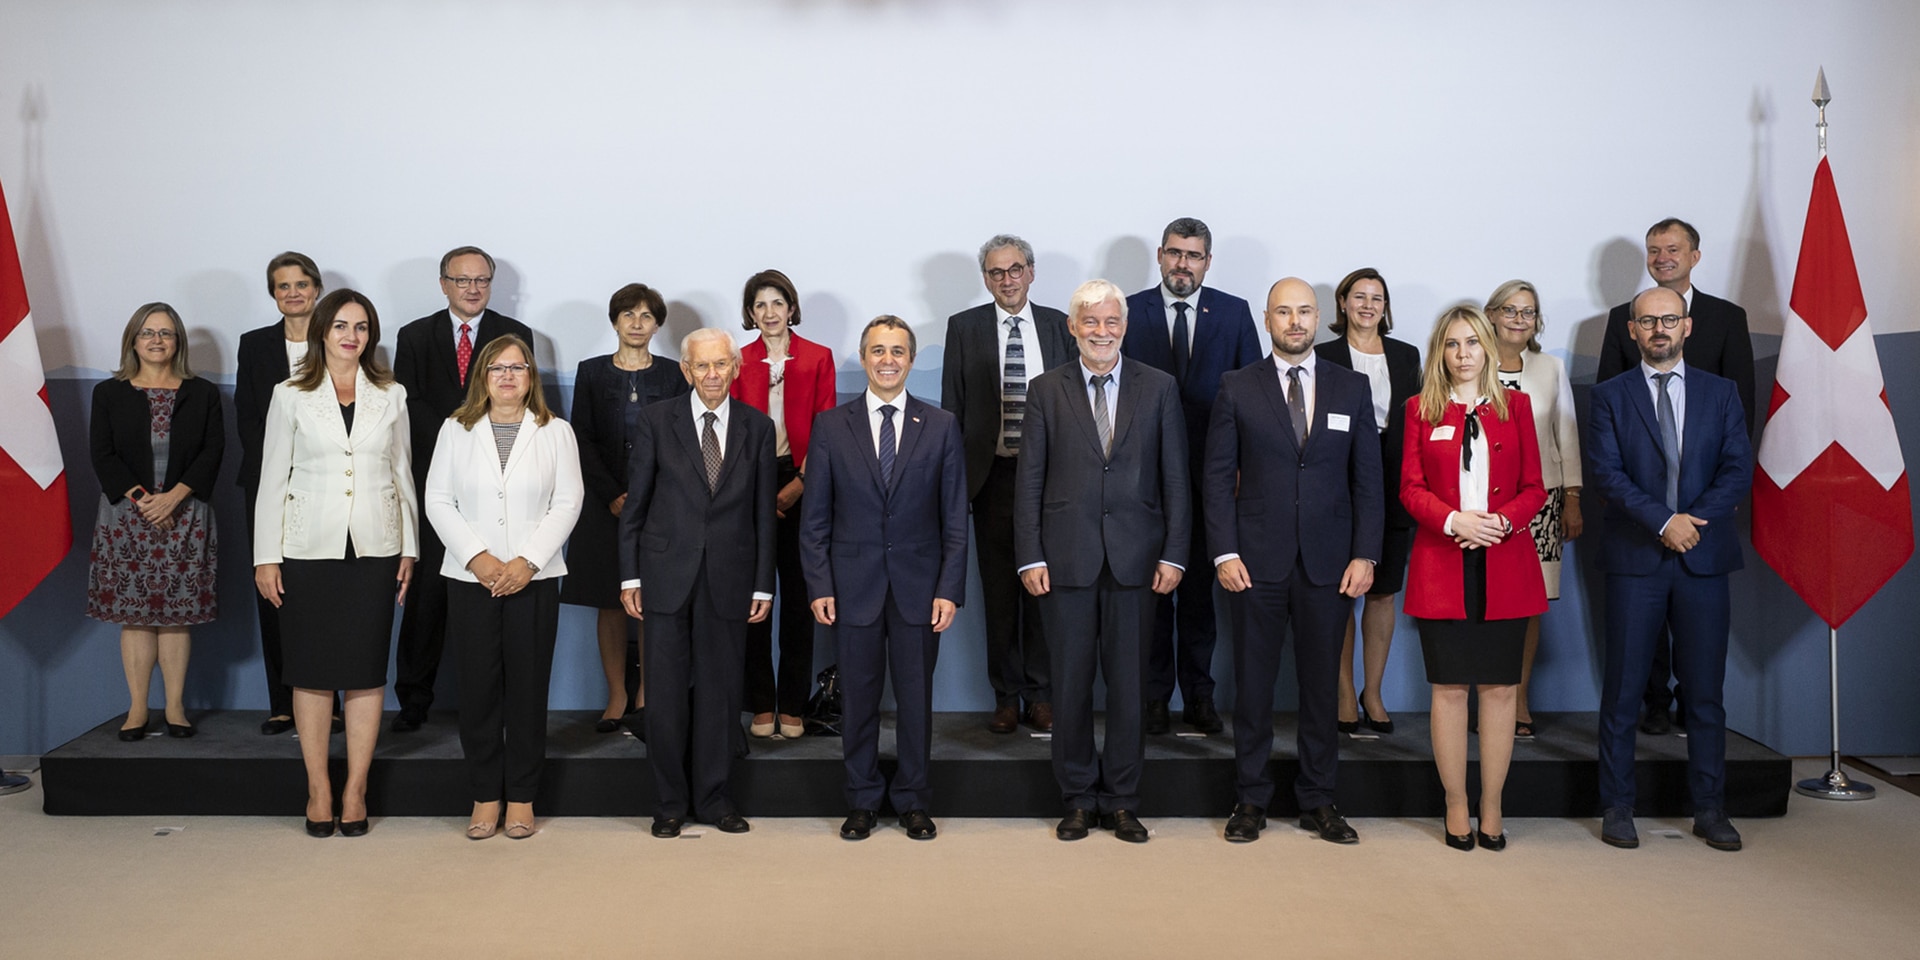 Foto di gruppo con il consigliere federale Ignazio Cassis e i rappresentanti di dieci paesi del sud-est europeo.